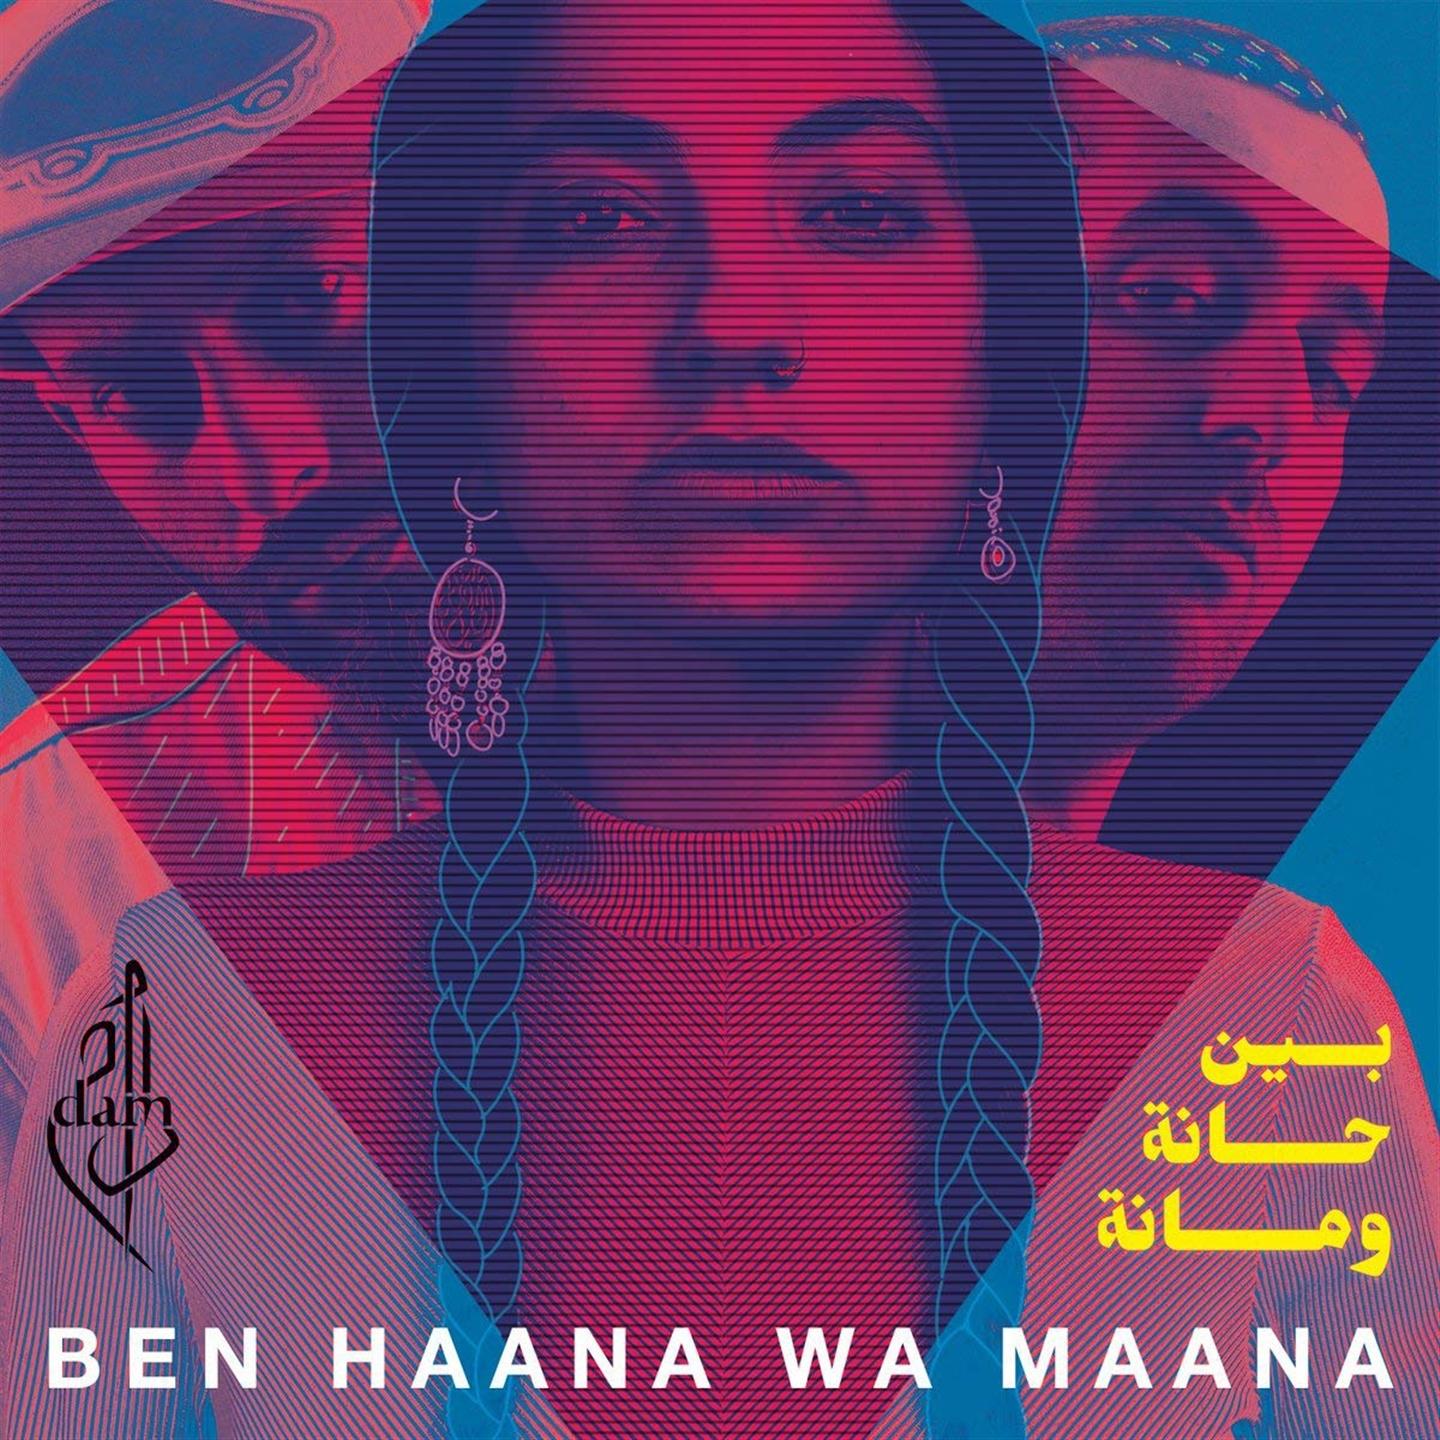 Dam - Ben Haana Wa Maana [Lp] - Photo 1/1